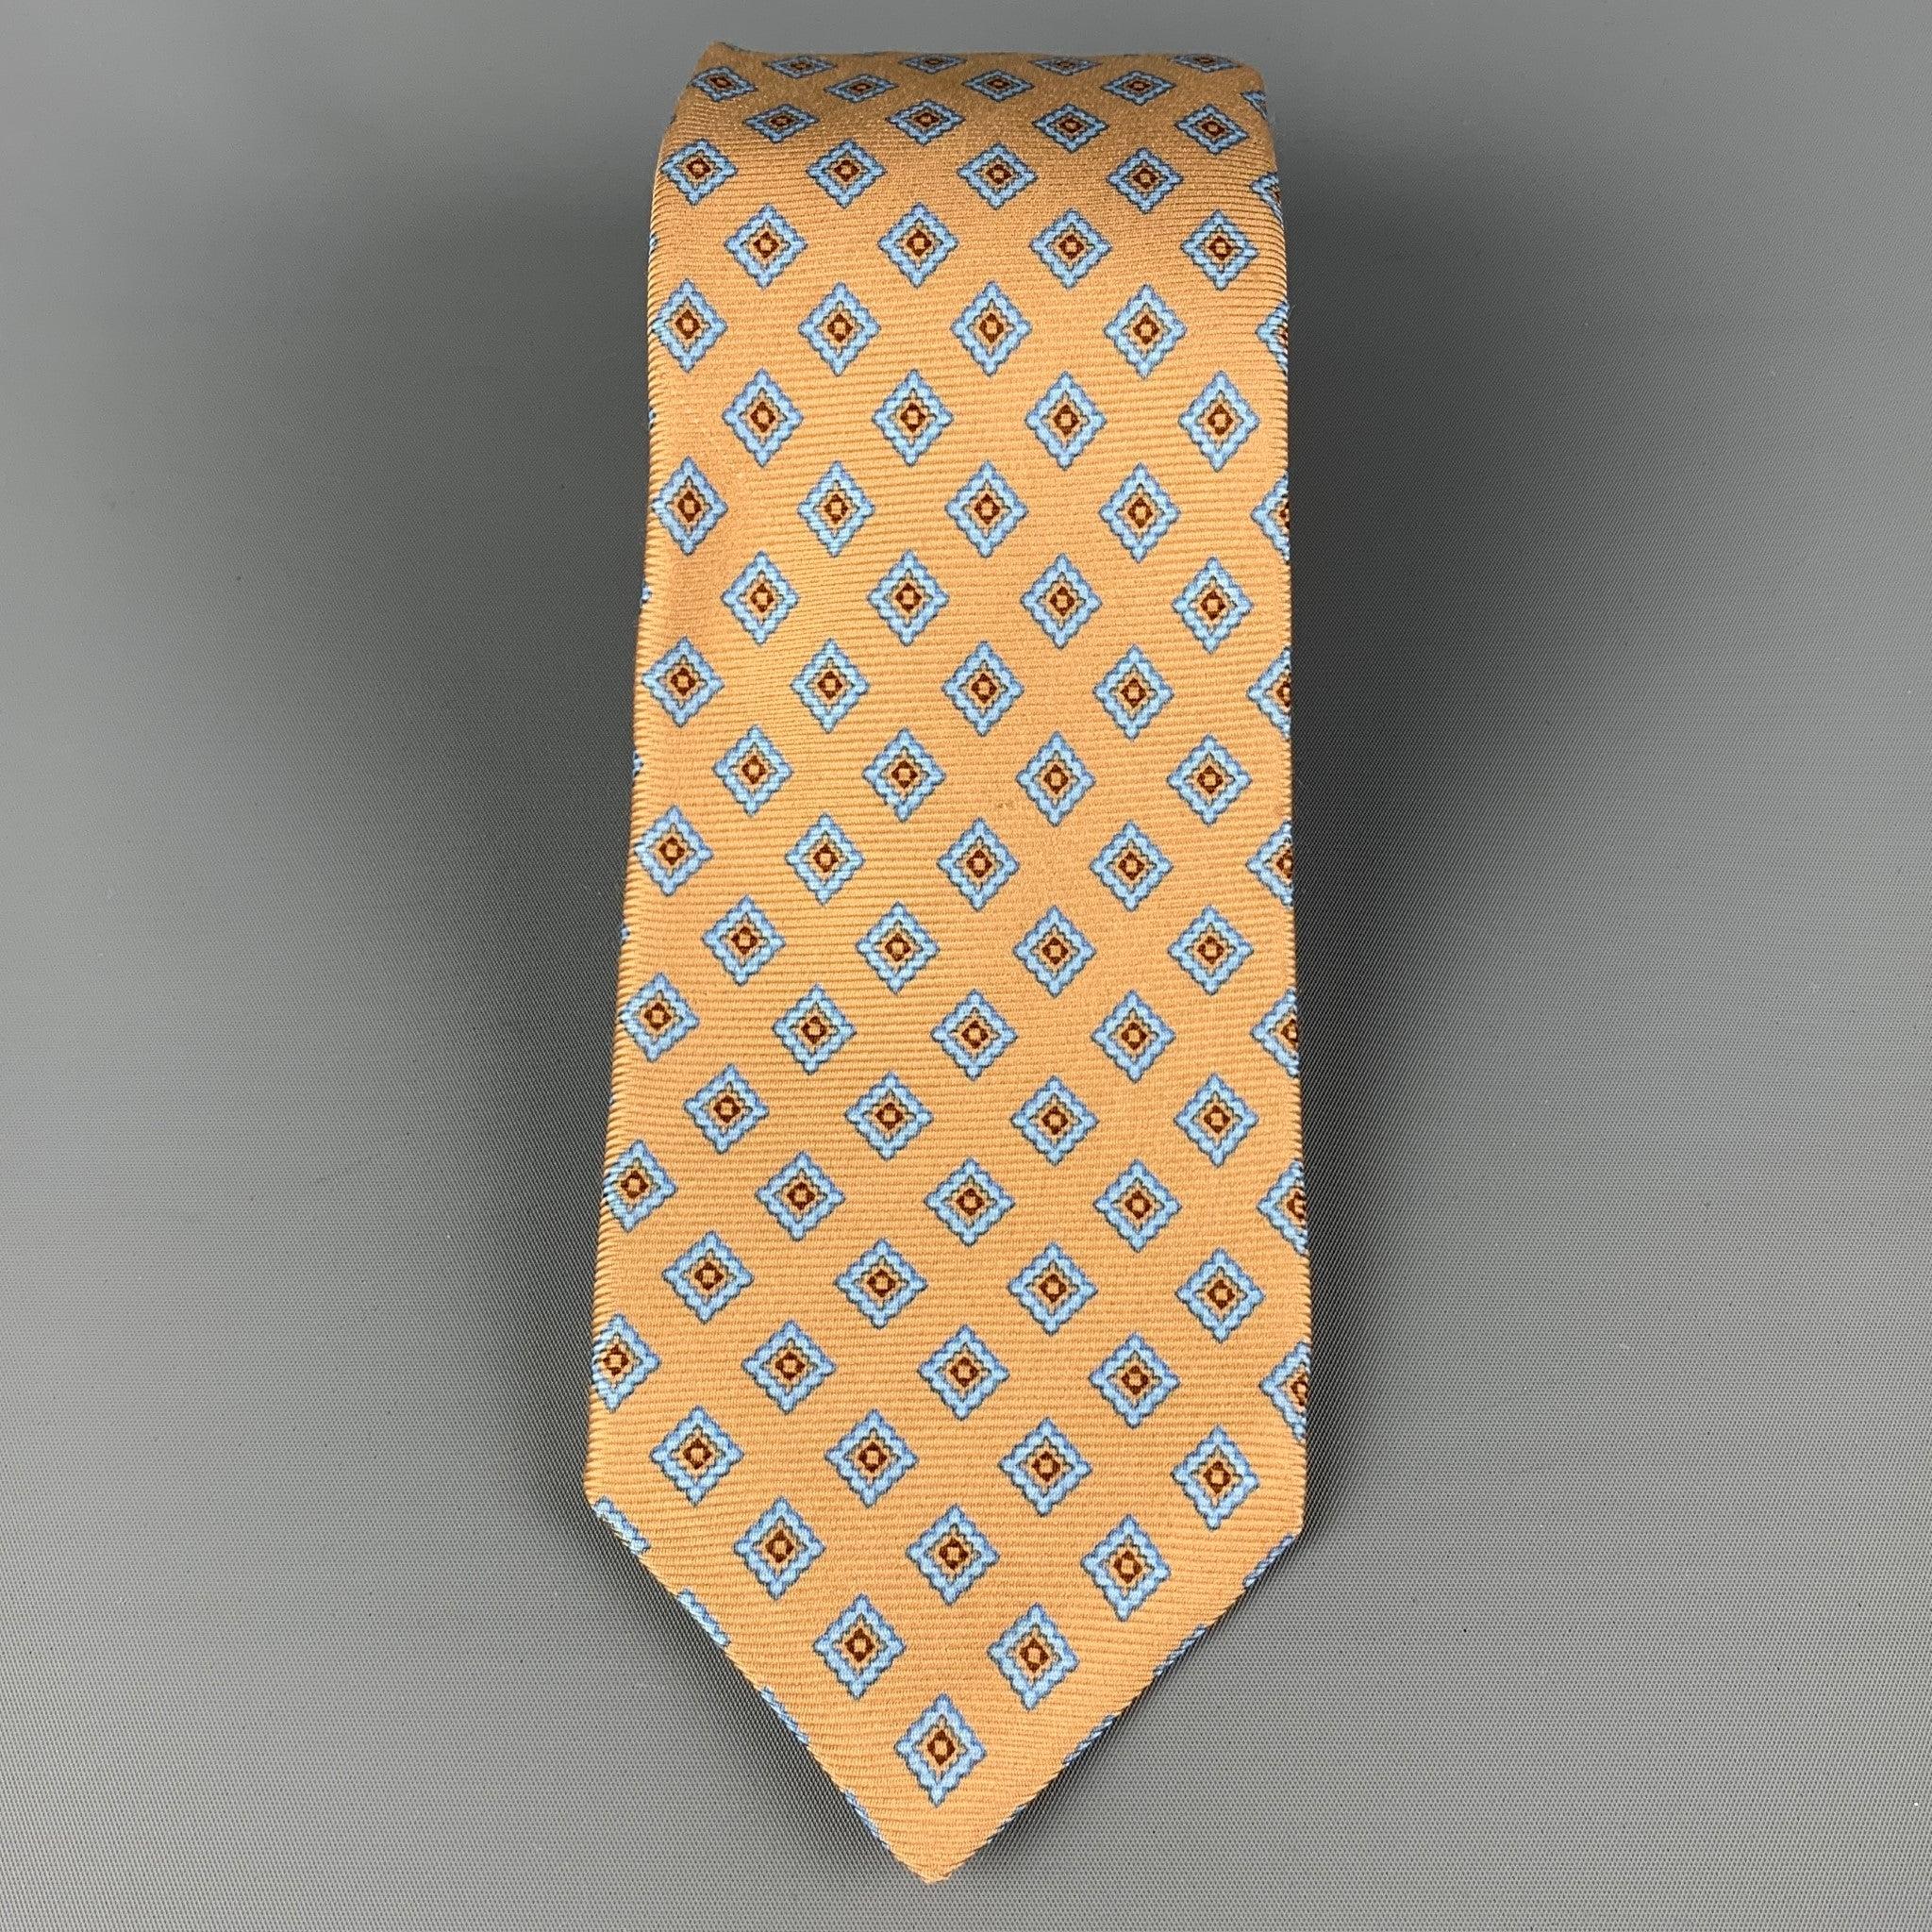 La cravate KITON est en soie jaune et bleue avec un imprimé de losanges. Fabriqué en Italie. Très bon état d'usage.largeur : 3.75 pouces  Longueur : 62 pouces 


  
  
 
Référence : 120381
Catégorie : Cravate
Plus de détails
    
Marque : 